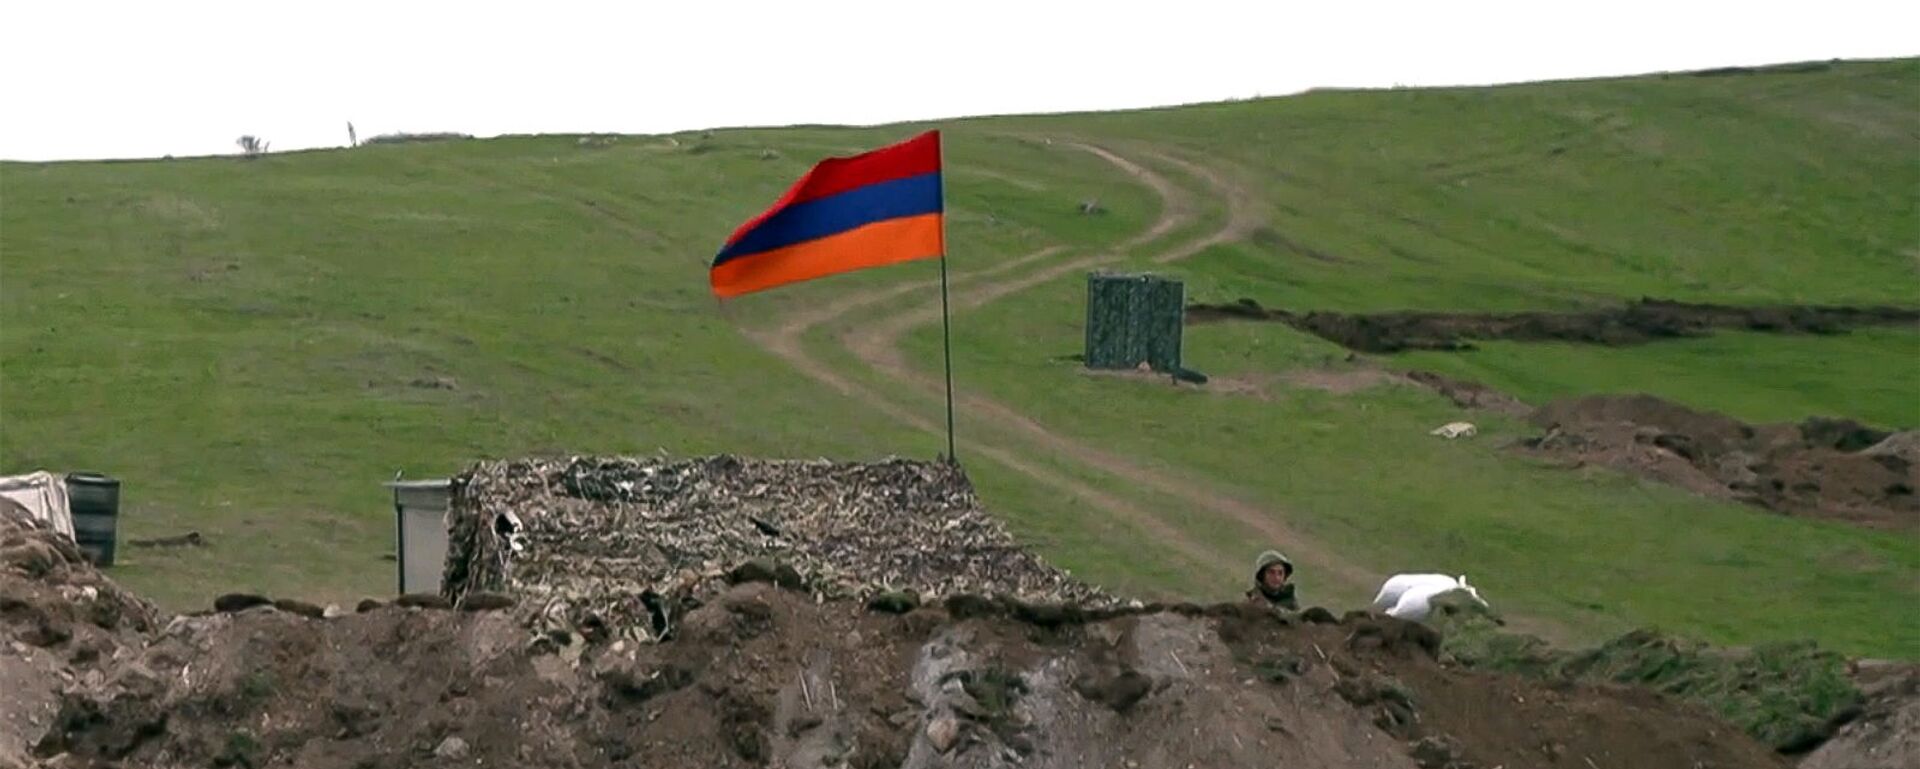 Армянский военнослужащий на армяно-азербайджанской границе - Sputnik Армения, 1920, 10.12.2021